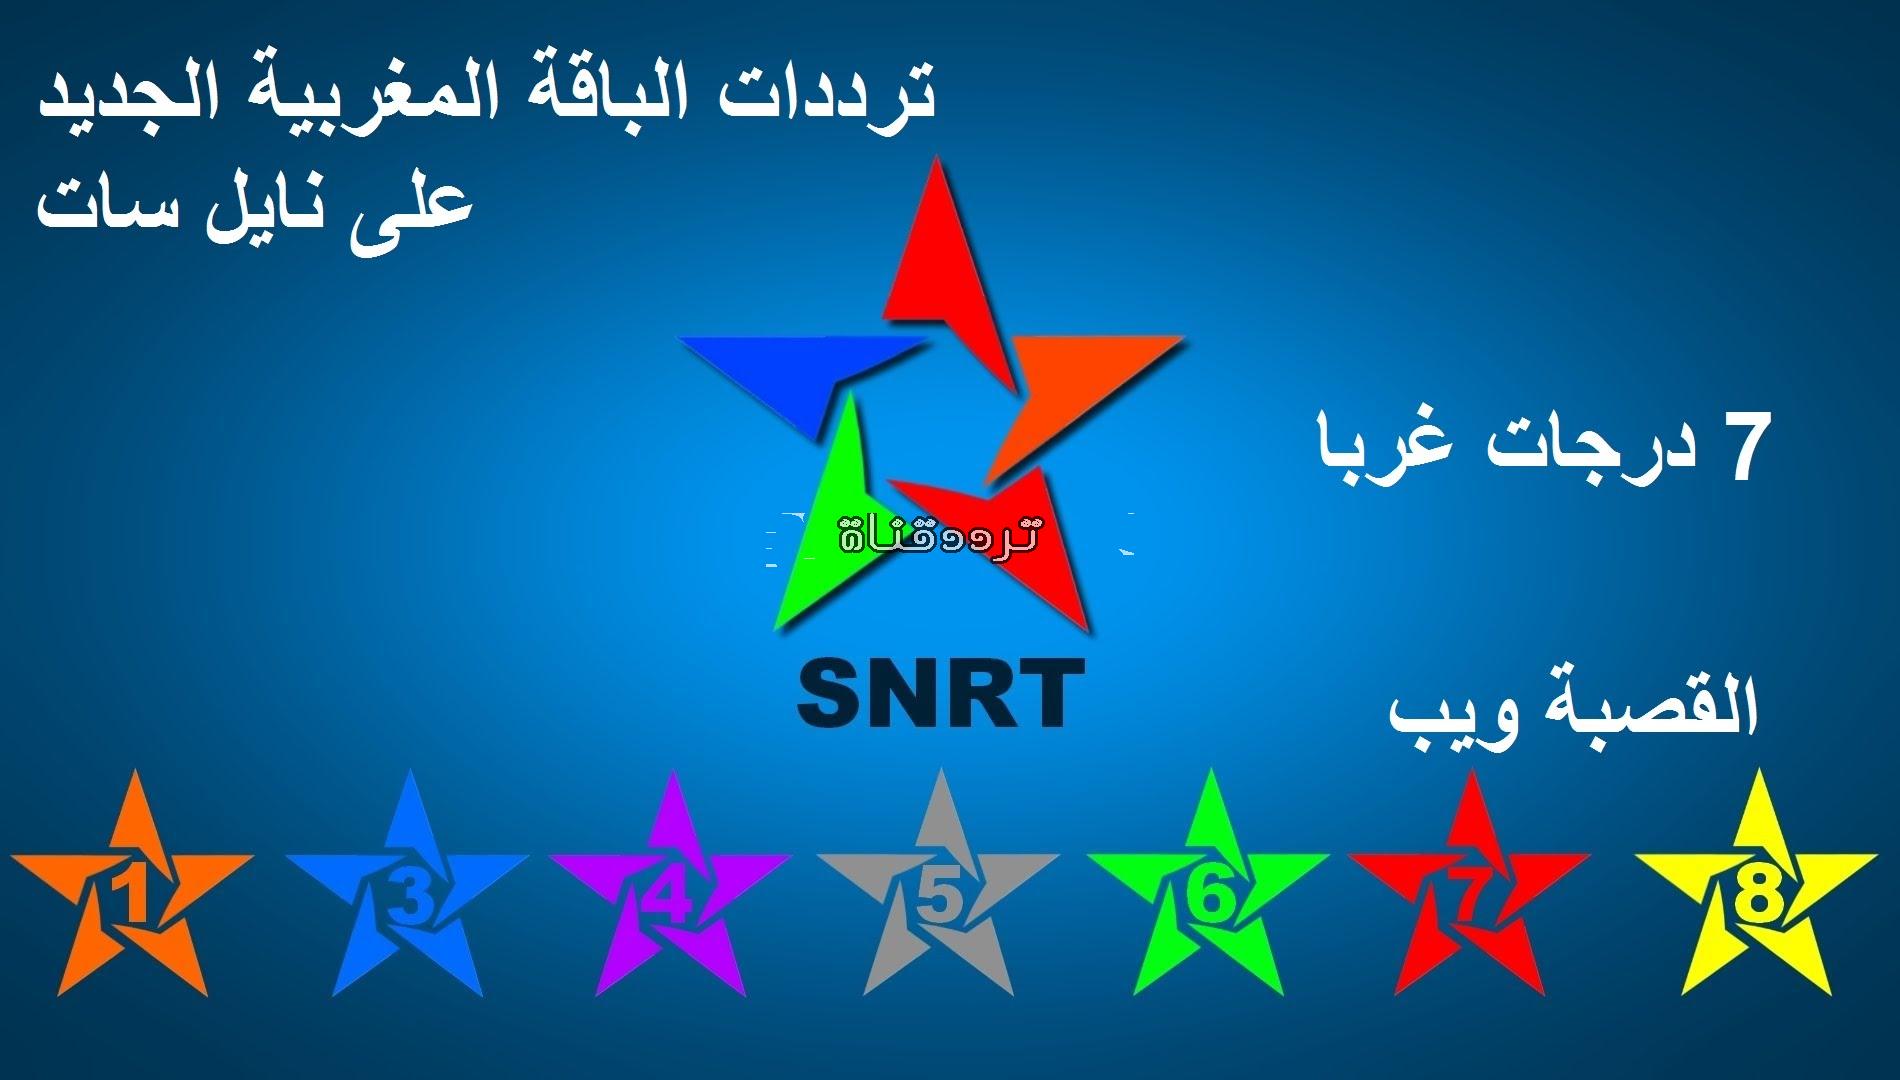 تردد القنوات المغربية على النايل سات 2017 تردد جميع القنوات المغربية AL Mergab